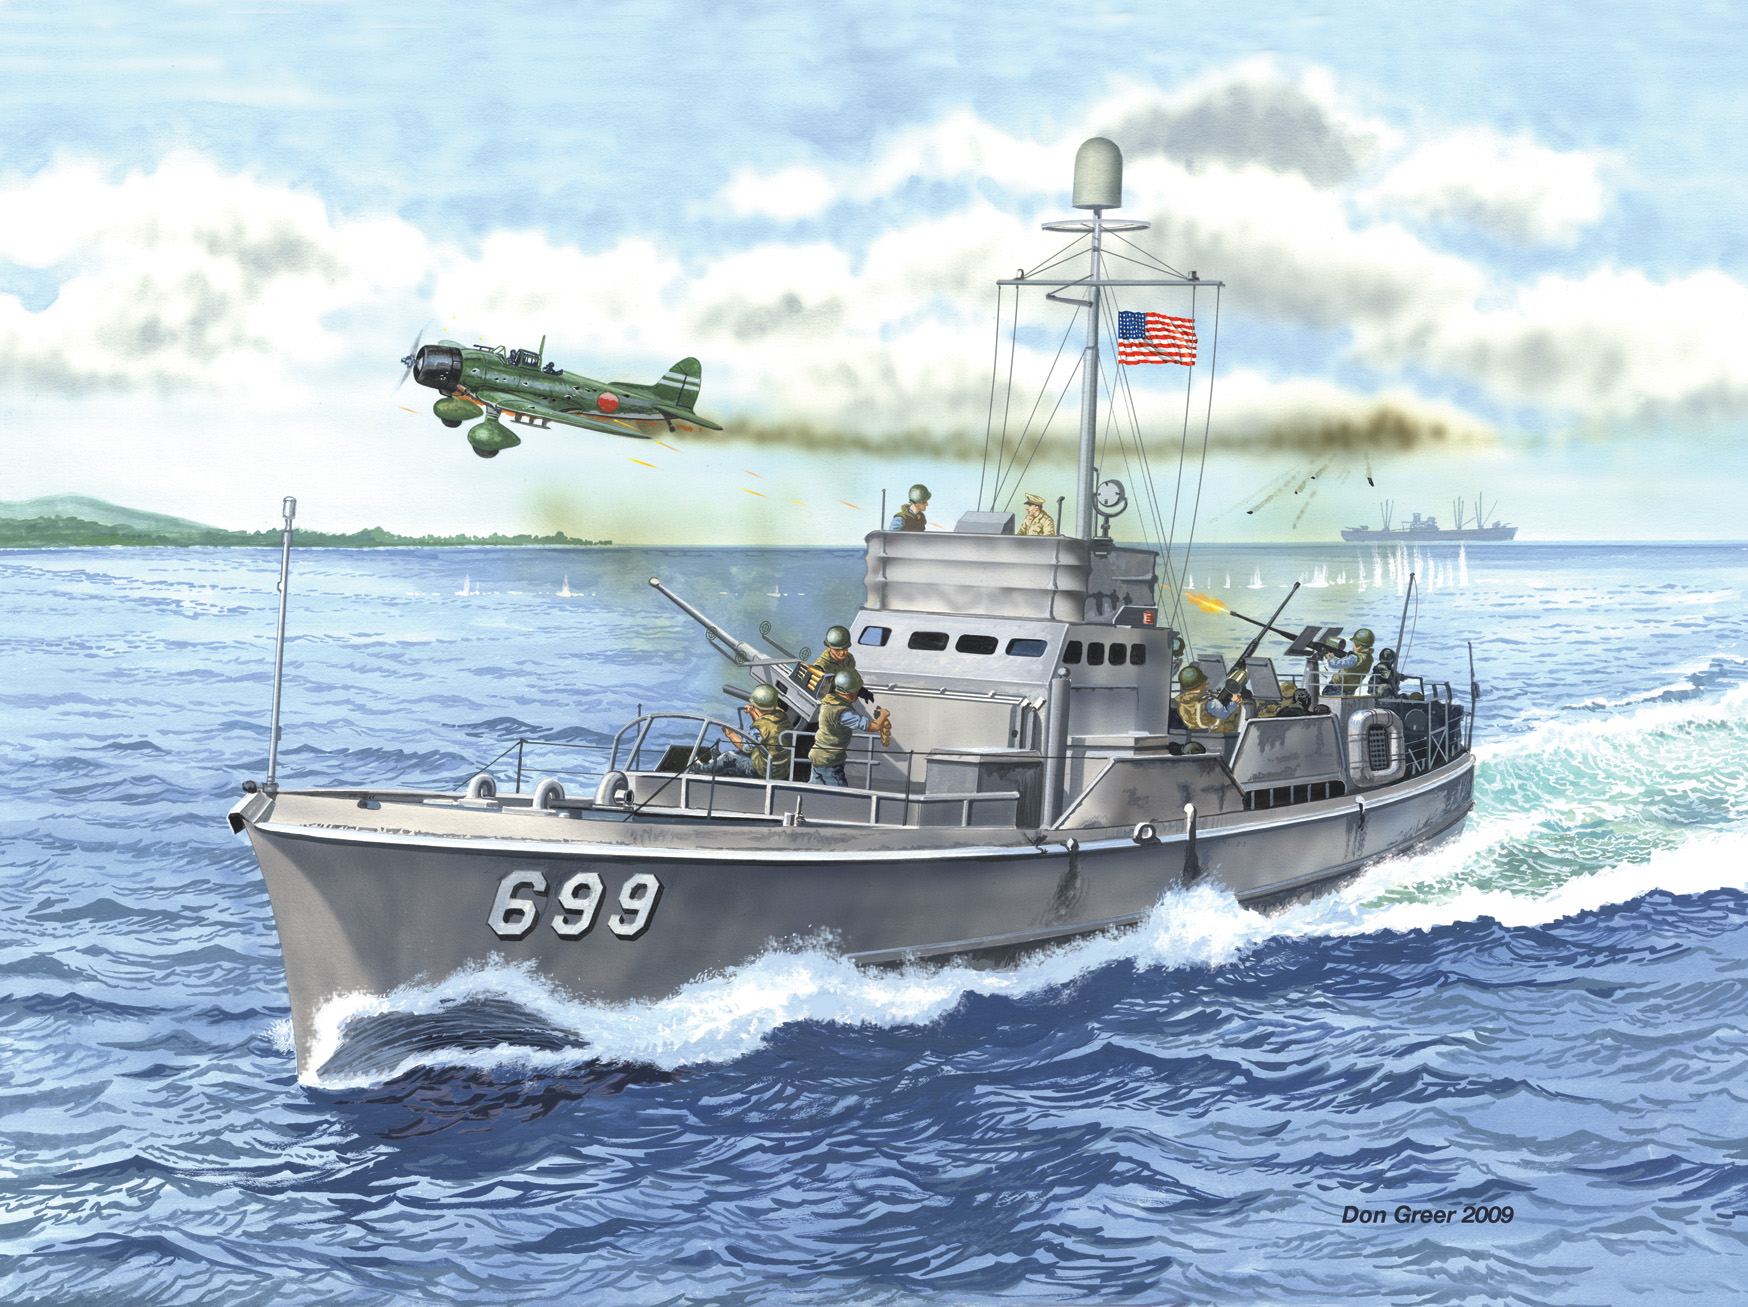 比亚克战役开始时，日本战斗机中队的指挥官亲自出击，攻击第七两栖部队。潜艇追逐者699在攻击中遭受重创。唐·格里尔绘画。